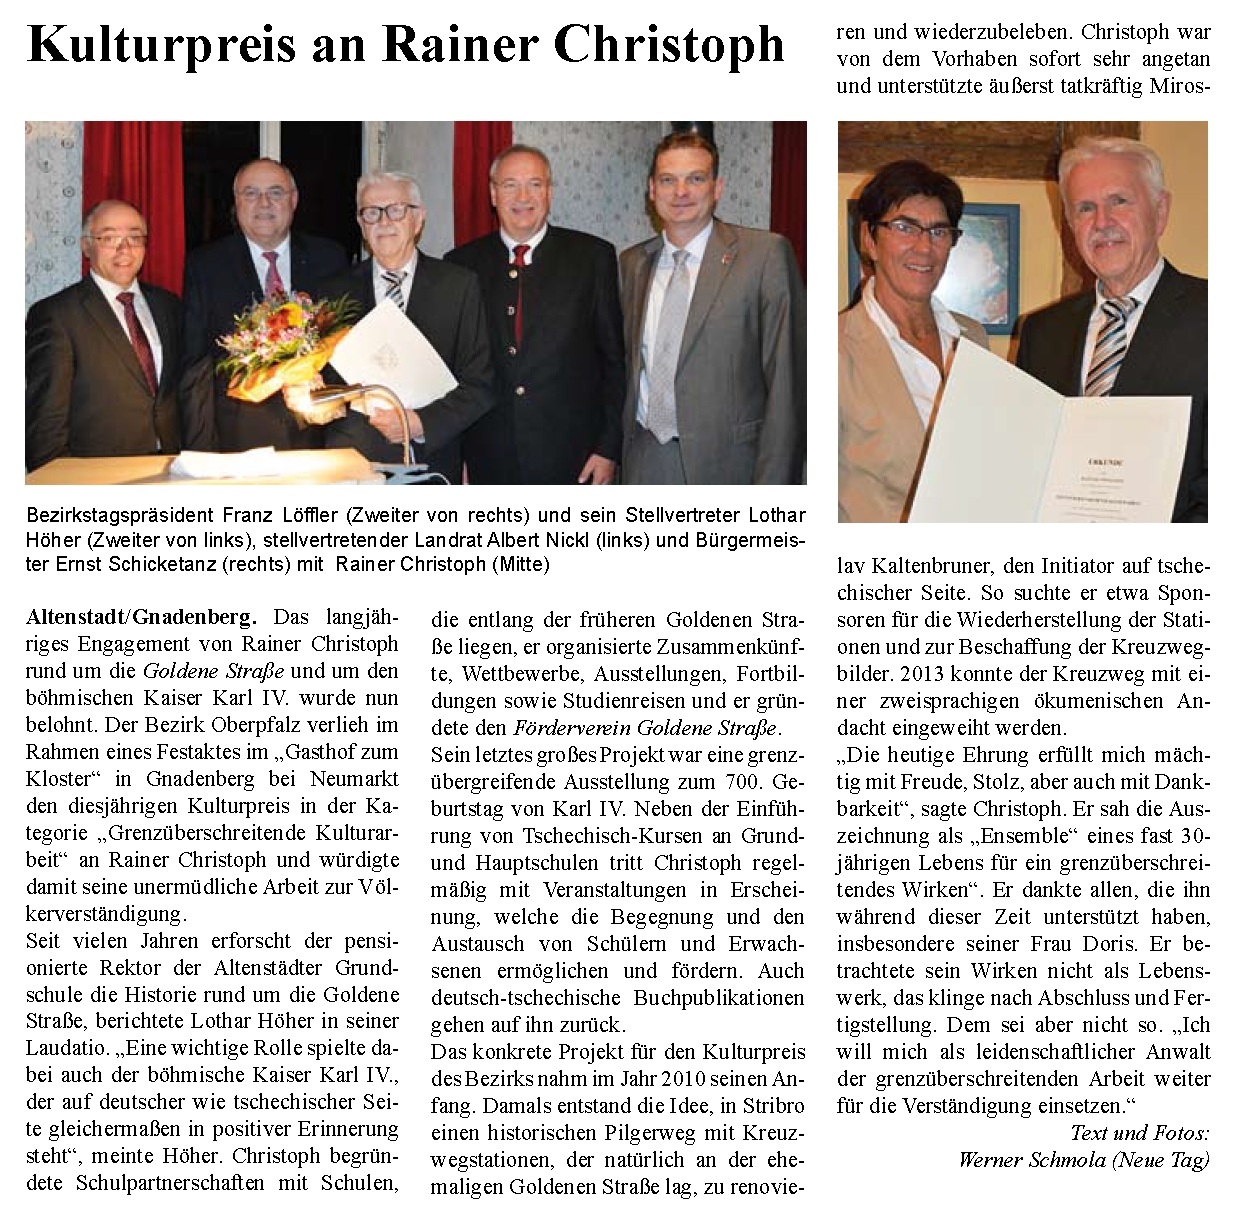 Kulturpreis an Rainer Christoph